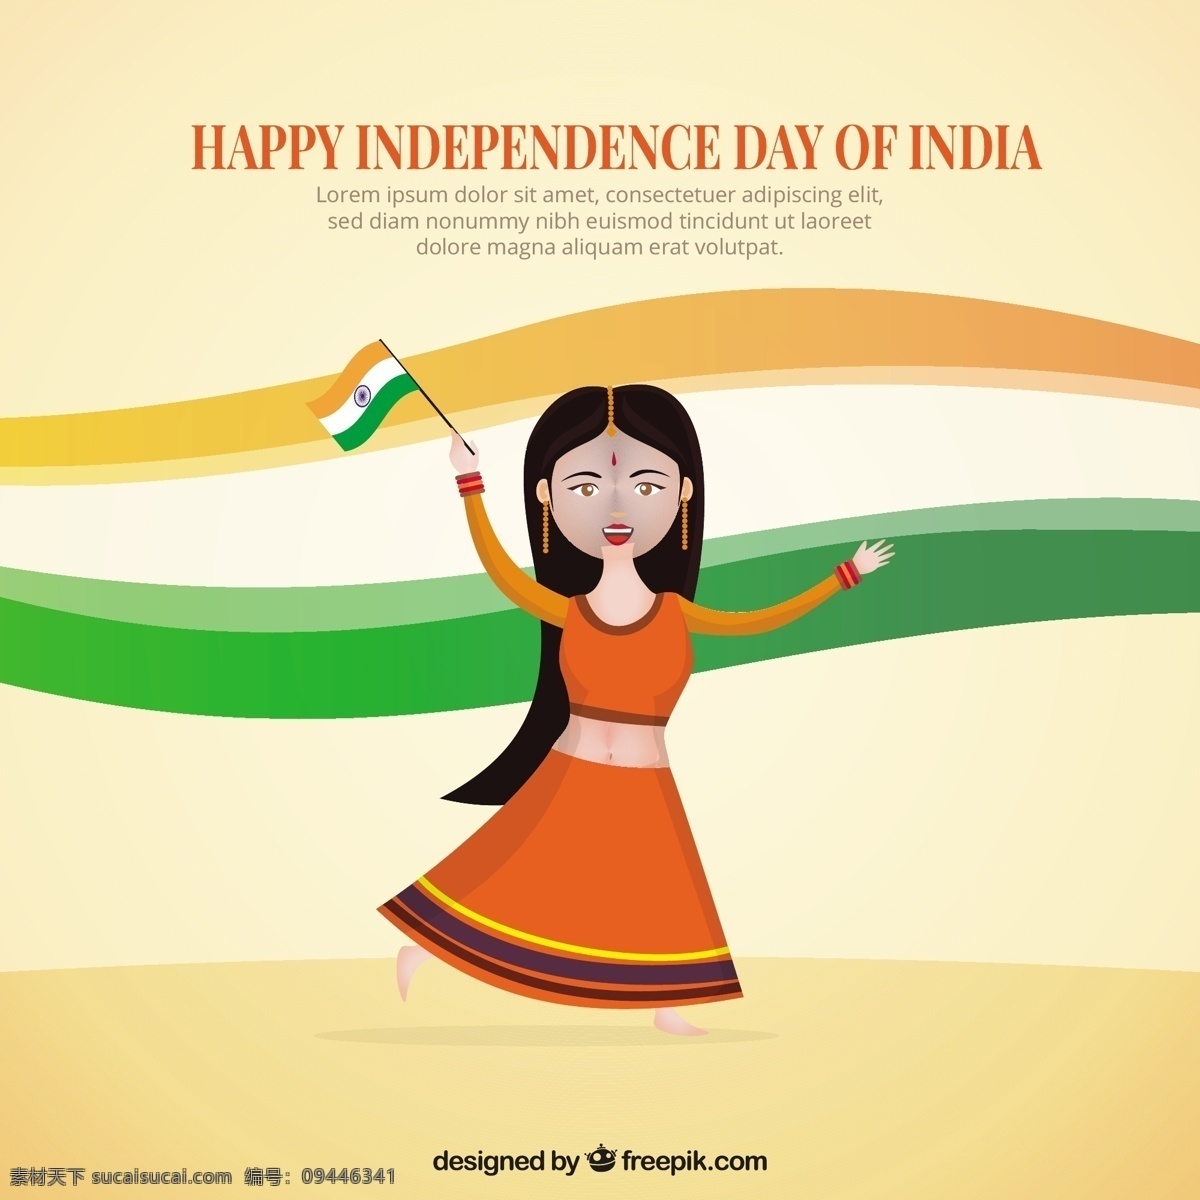 印度 国旗 舞 女子 派对 人物 卡通 舞蹈 庆典 快乐 节日 节日快乐 公寓 印第安人 平面设计 卡通人物 庆祝 和平 自由